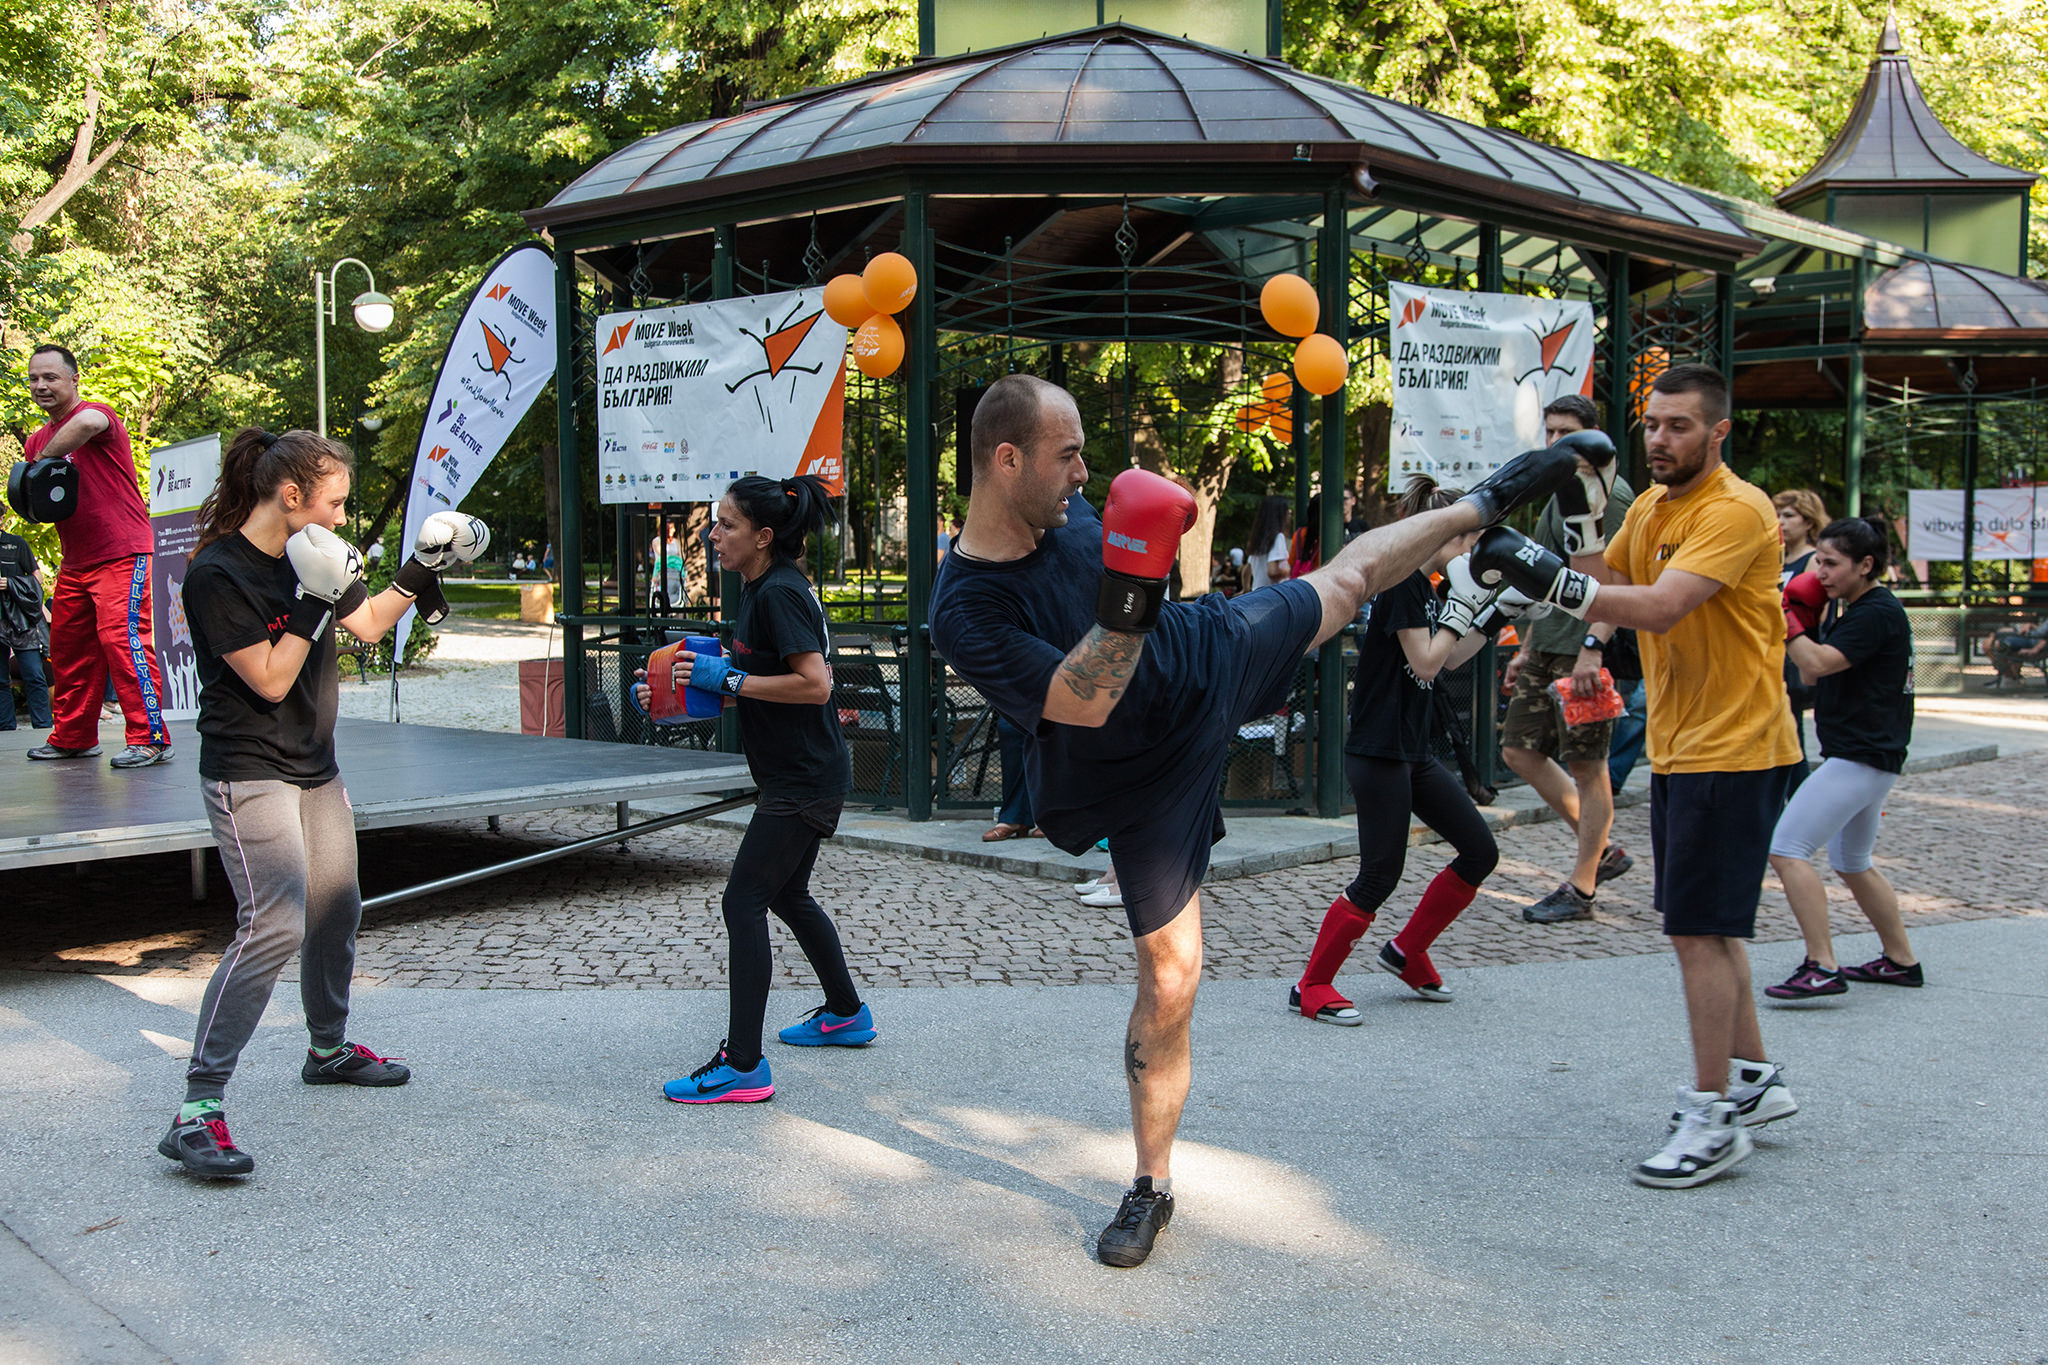 България се включва в Европейската седмица на физическата активност и спорт MOVE WEEK